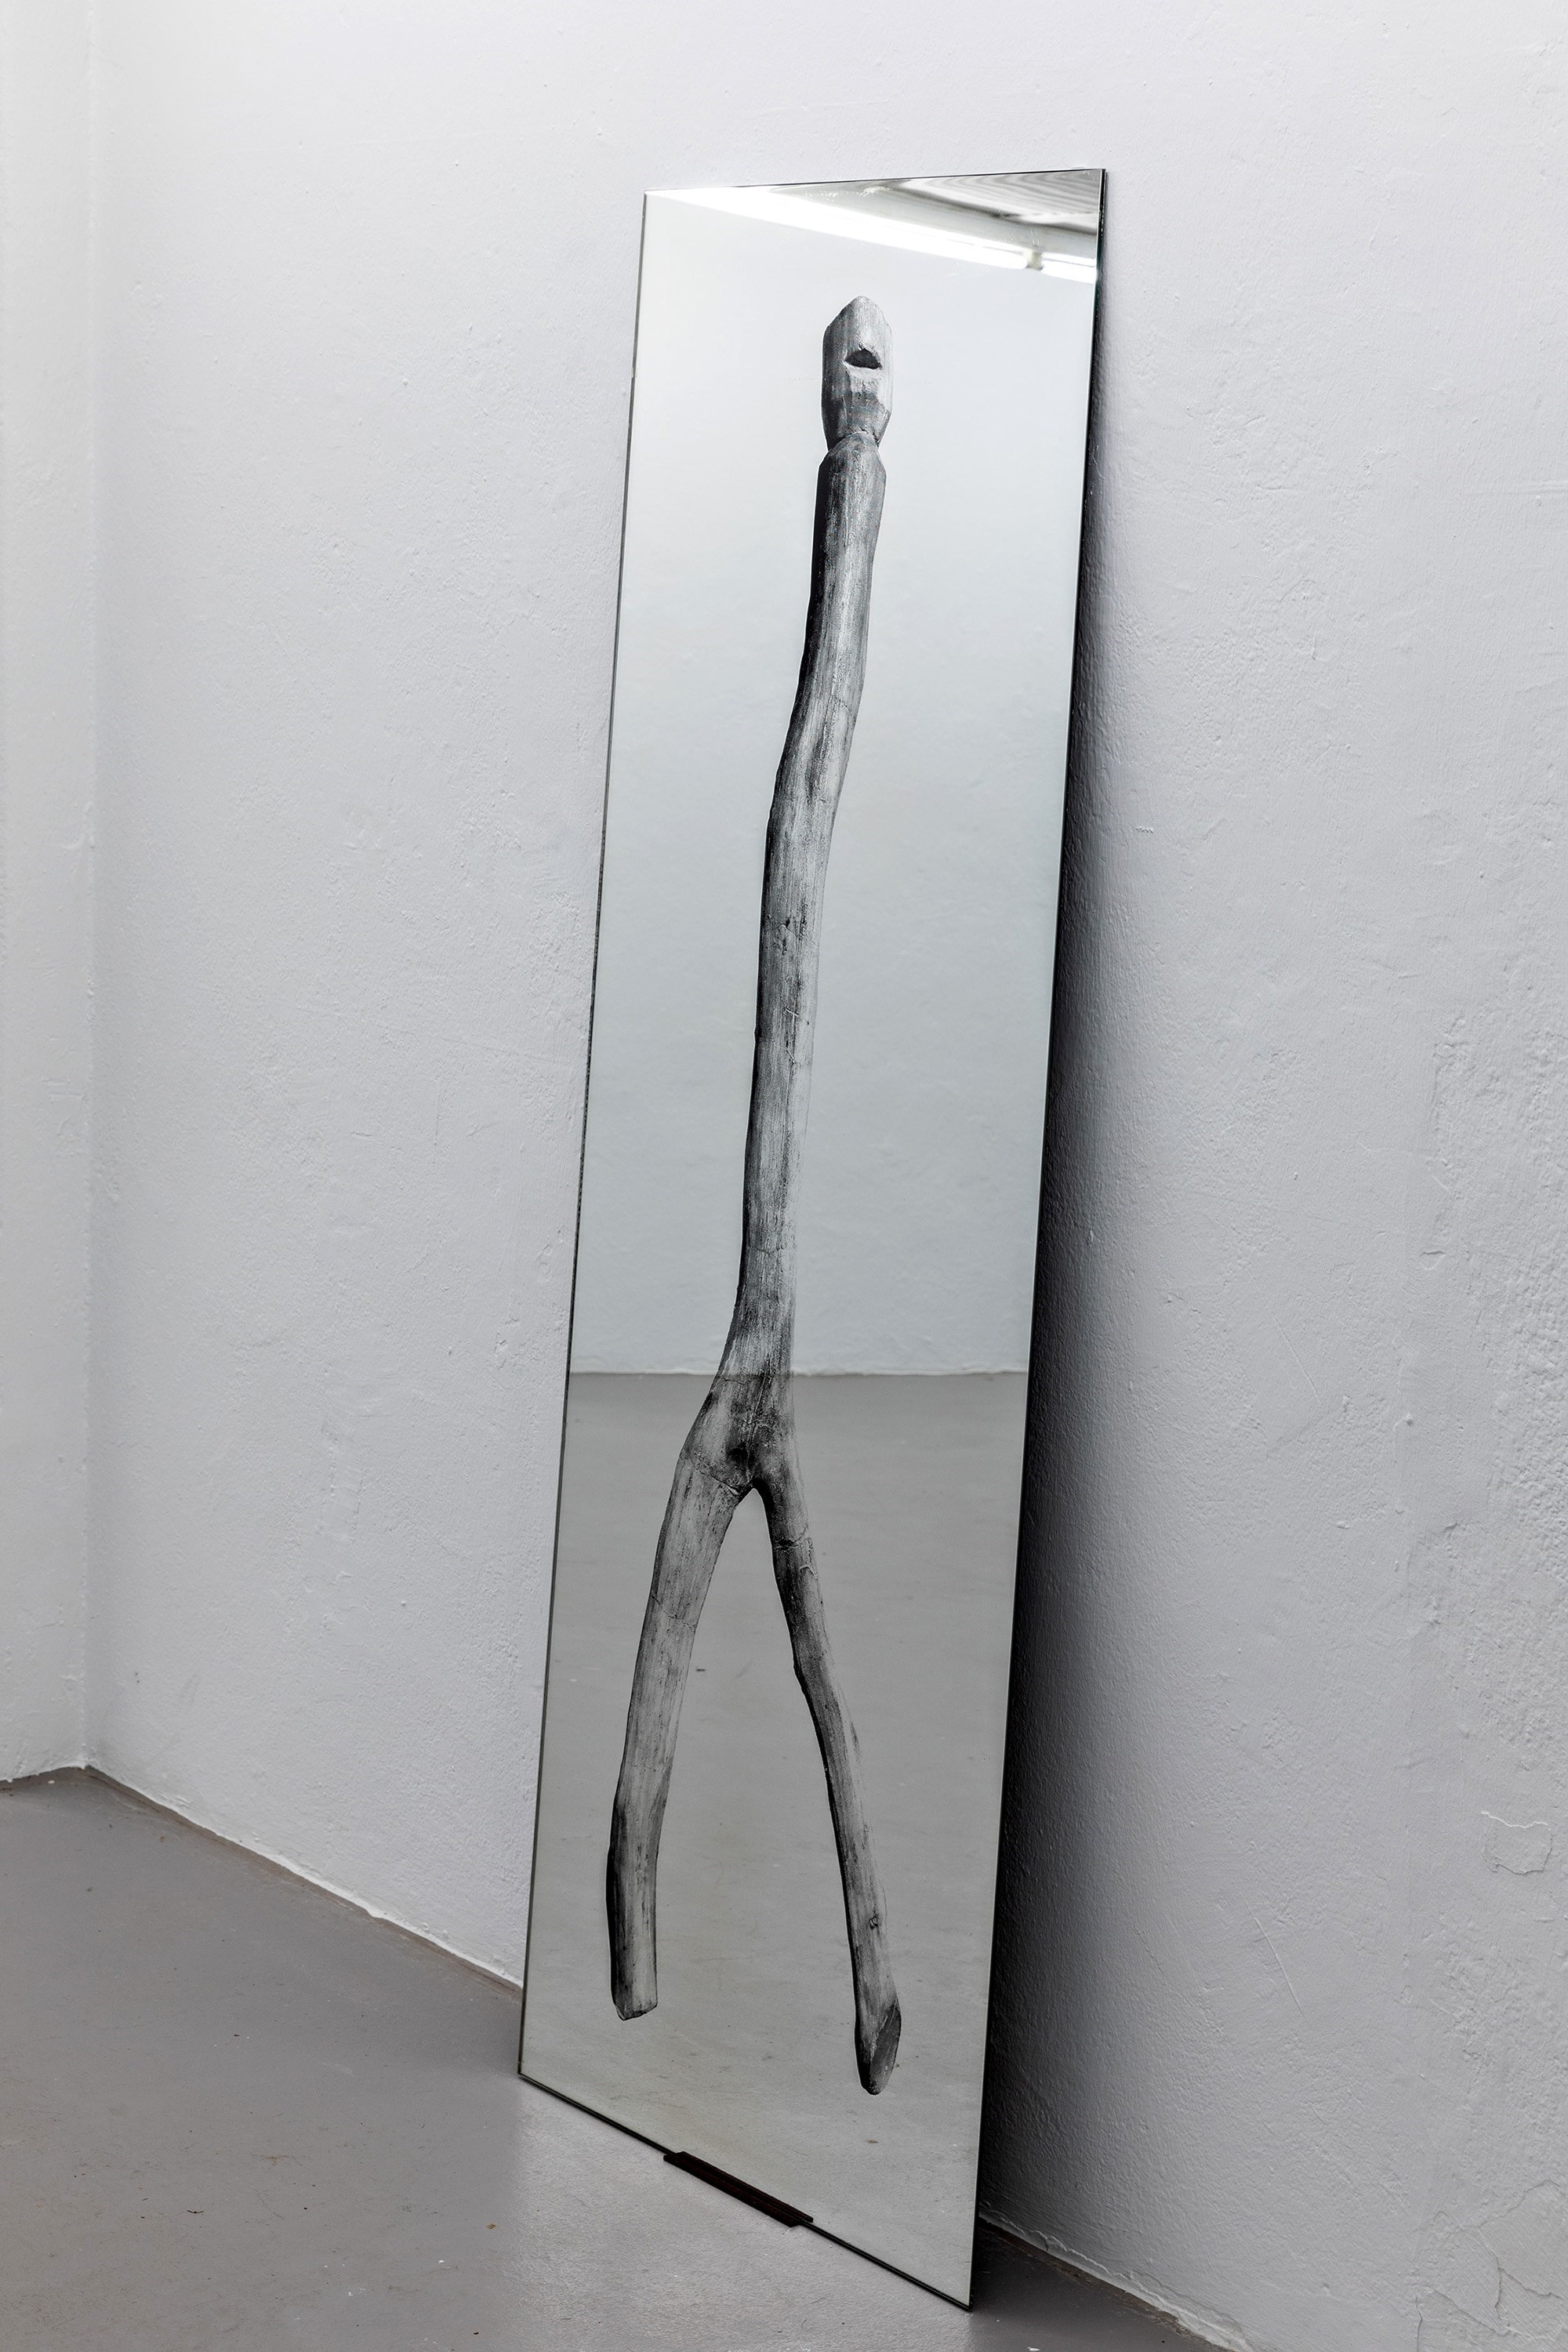 Niederdorla I, 195 cm x 70 cm, silkscreen on mirror glas, 2021